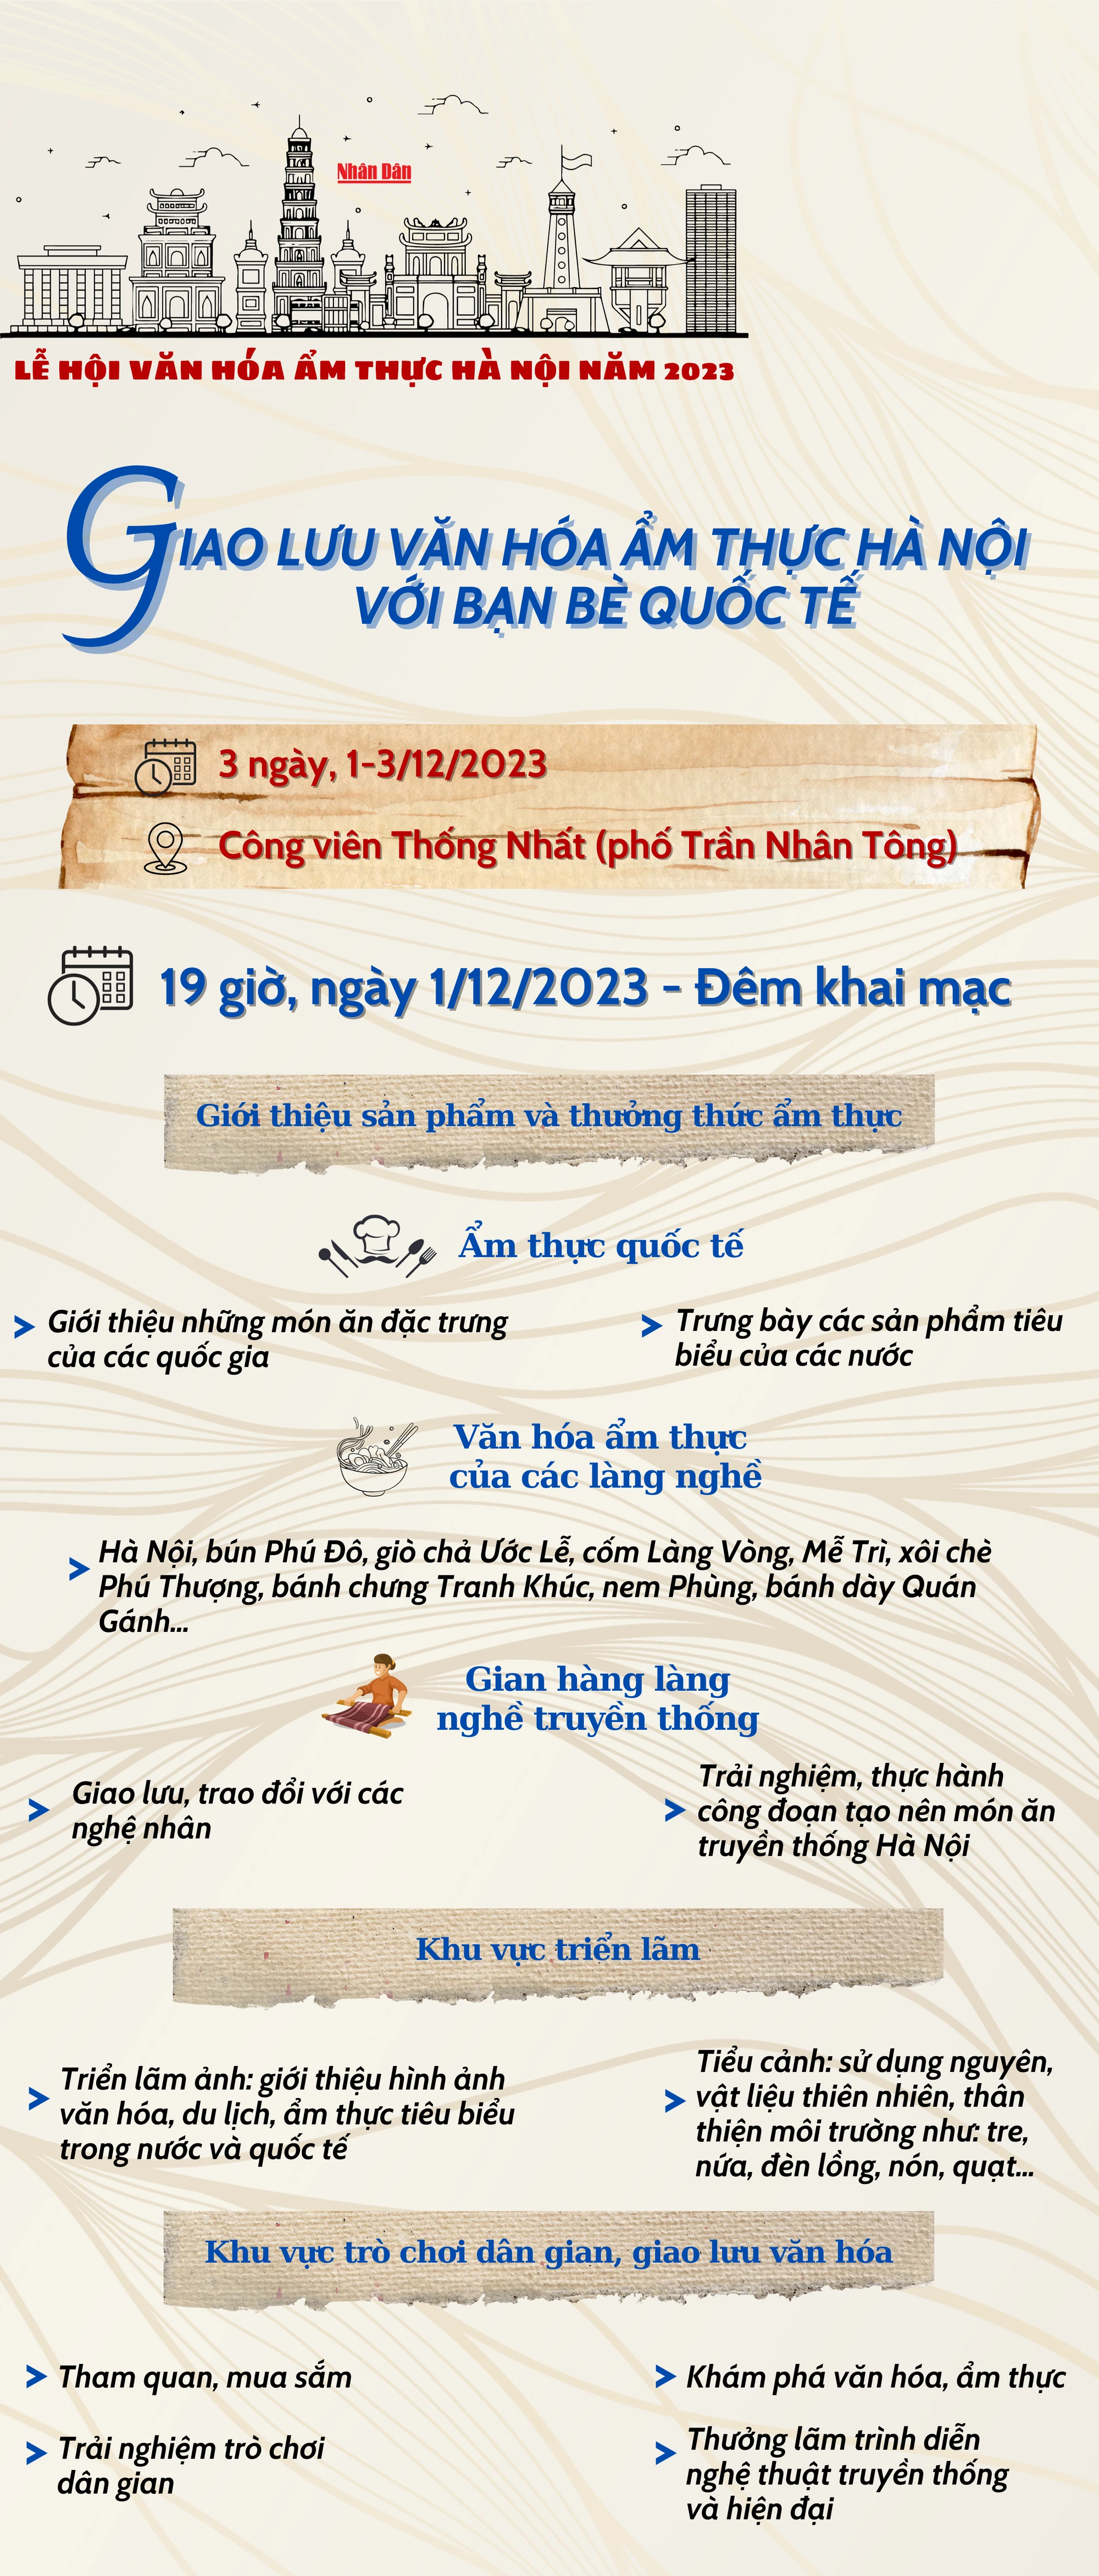 [Infographic] Một số điểm nhấn tại Lễ hội văn hóa ẩm thực Hà Nội ảnh 1